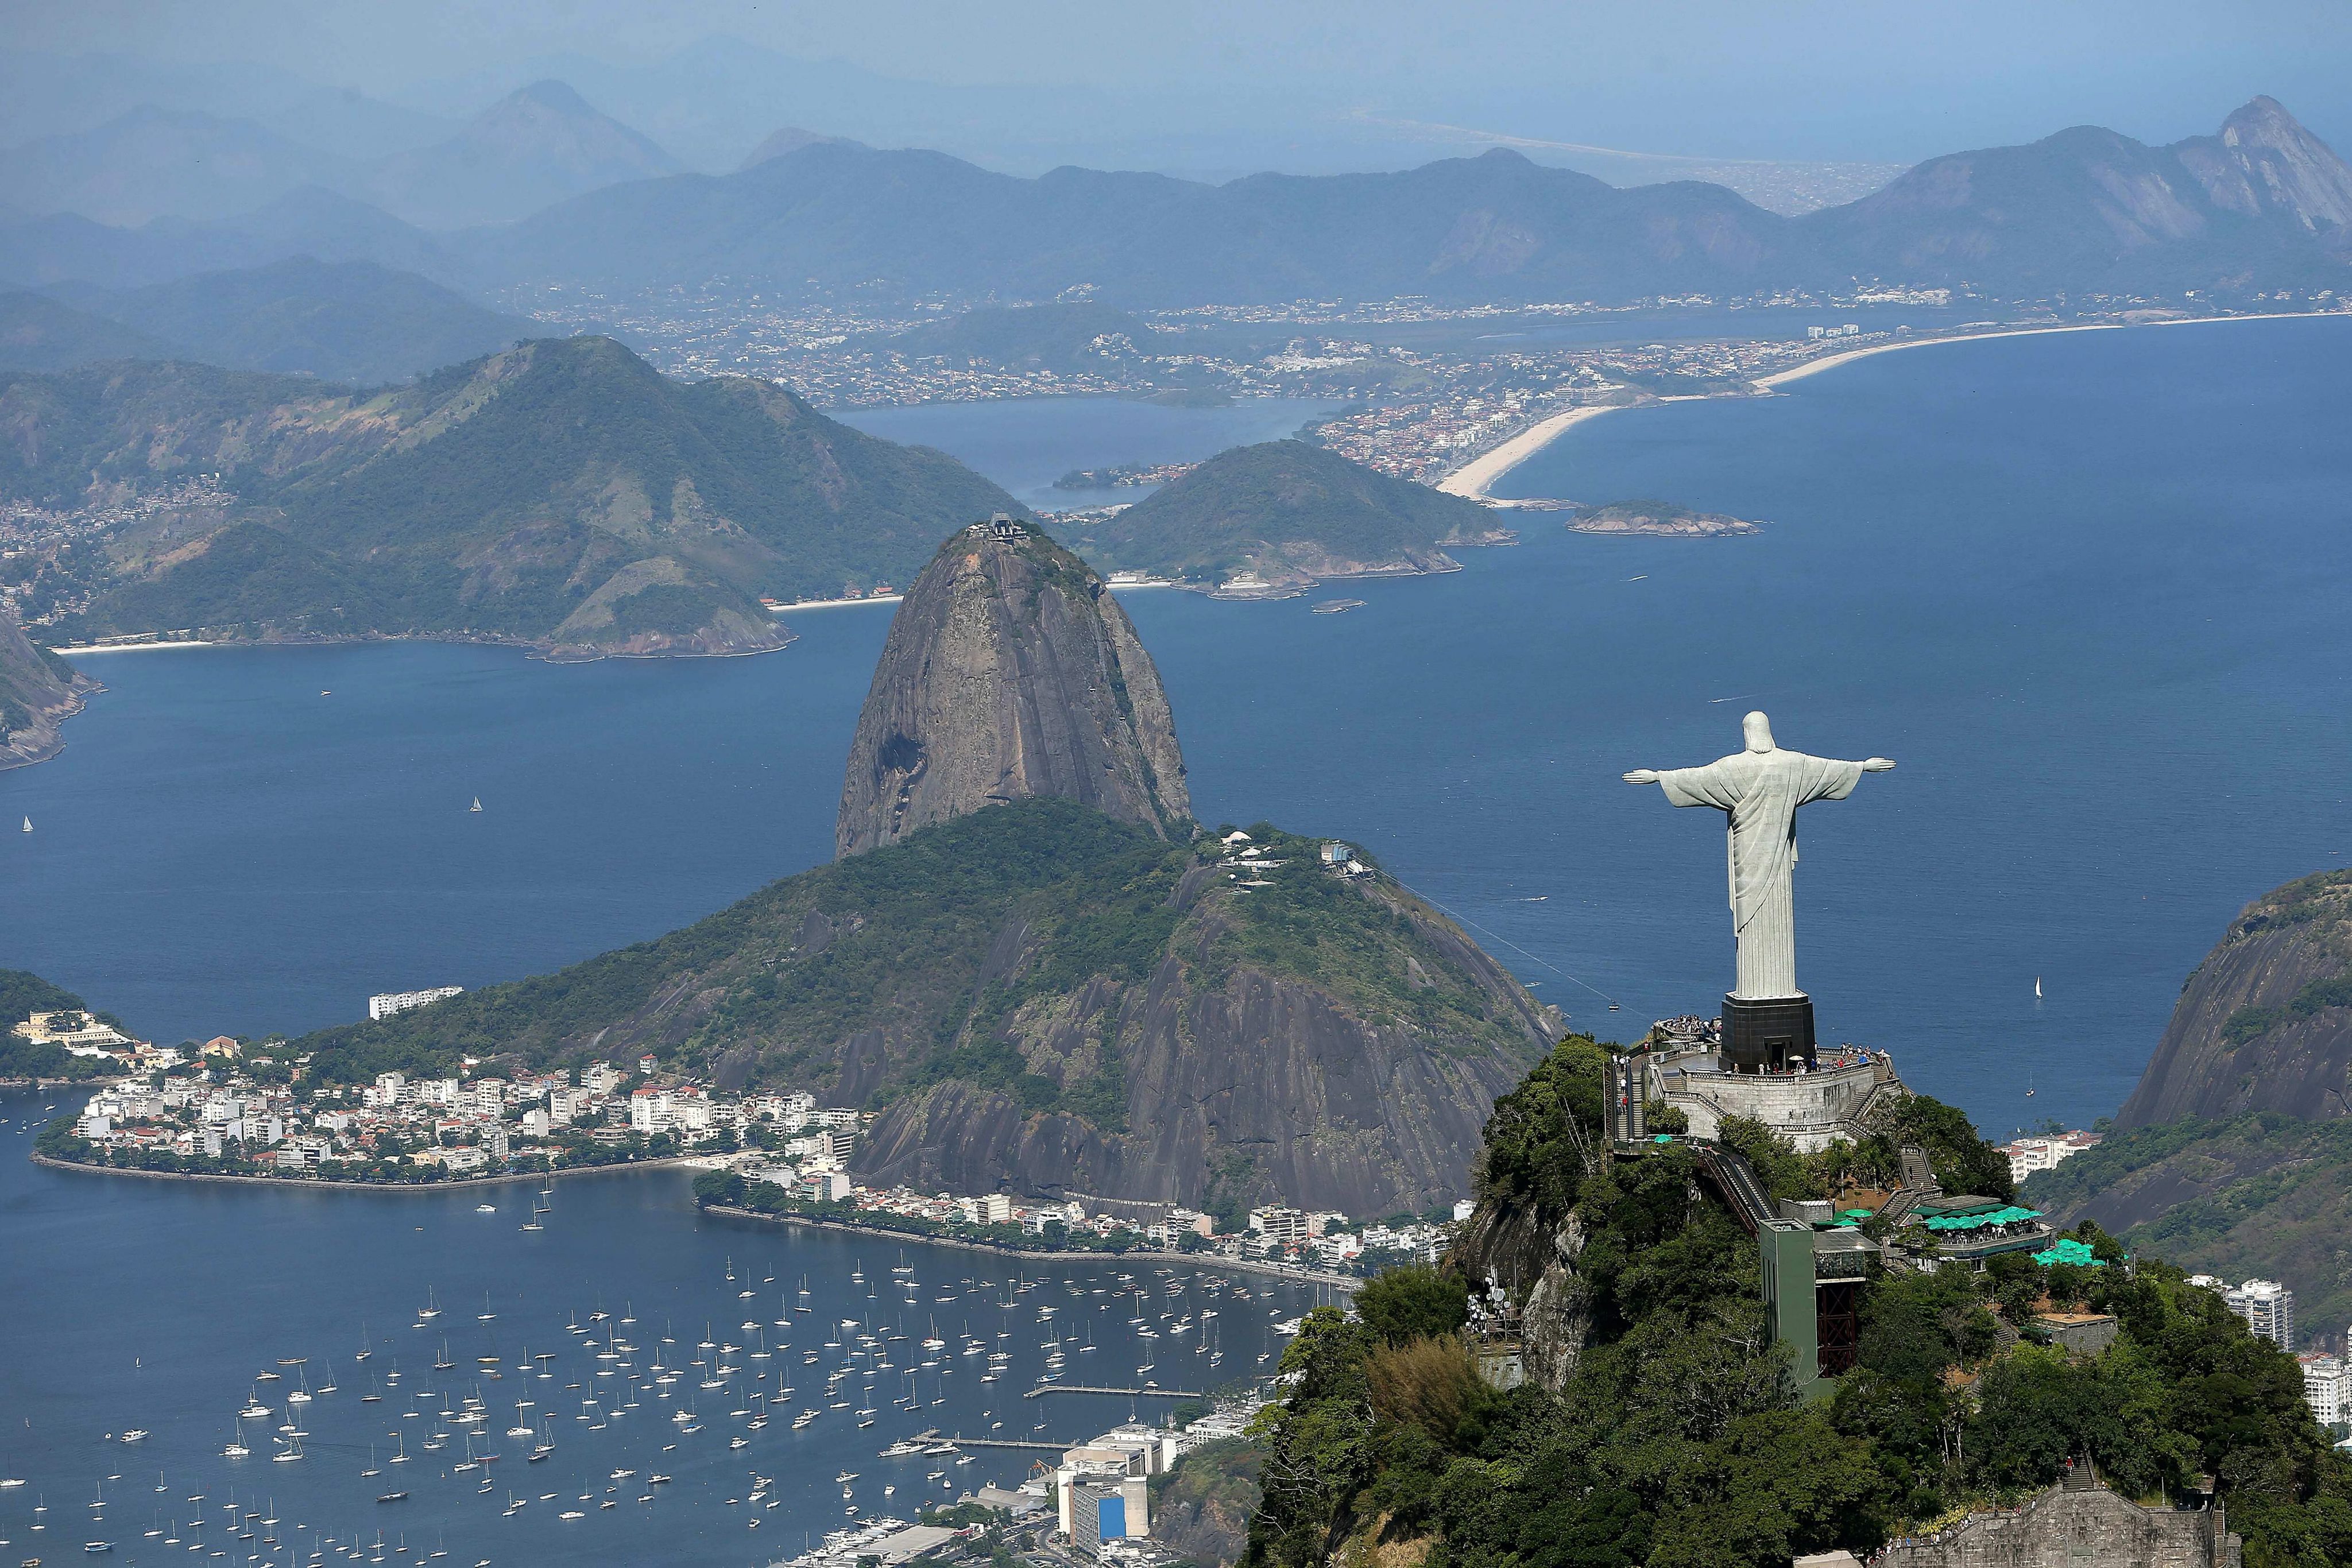 Ето така изглежда Рио Де Жанейро от високо. Красотата на природата успешно скрива проблемите на най-големия град в Бразилия.